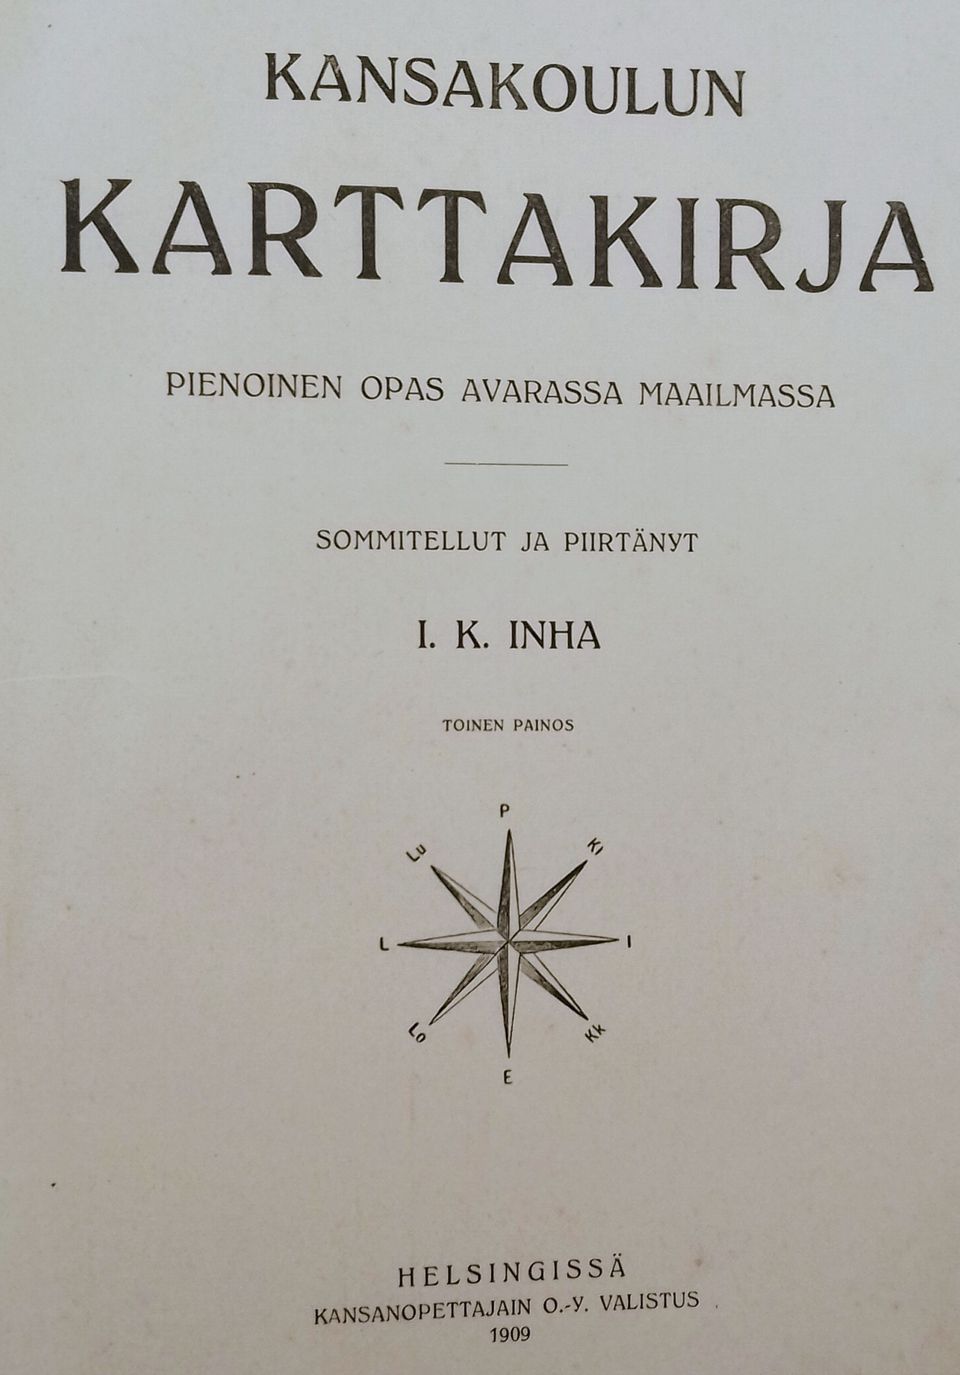 I.K.Inha: Kansakoulun karttakirja 1909 ja marmorikuvioitu vanhanaikainen albumi